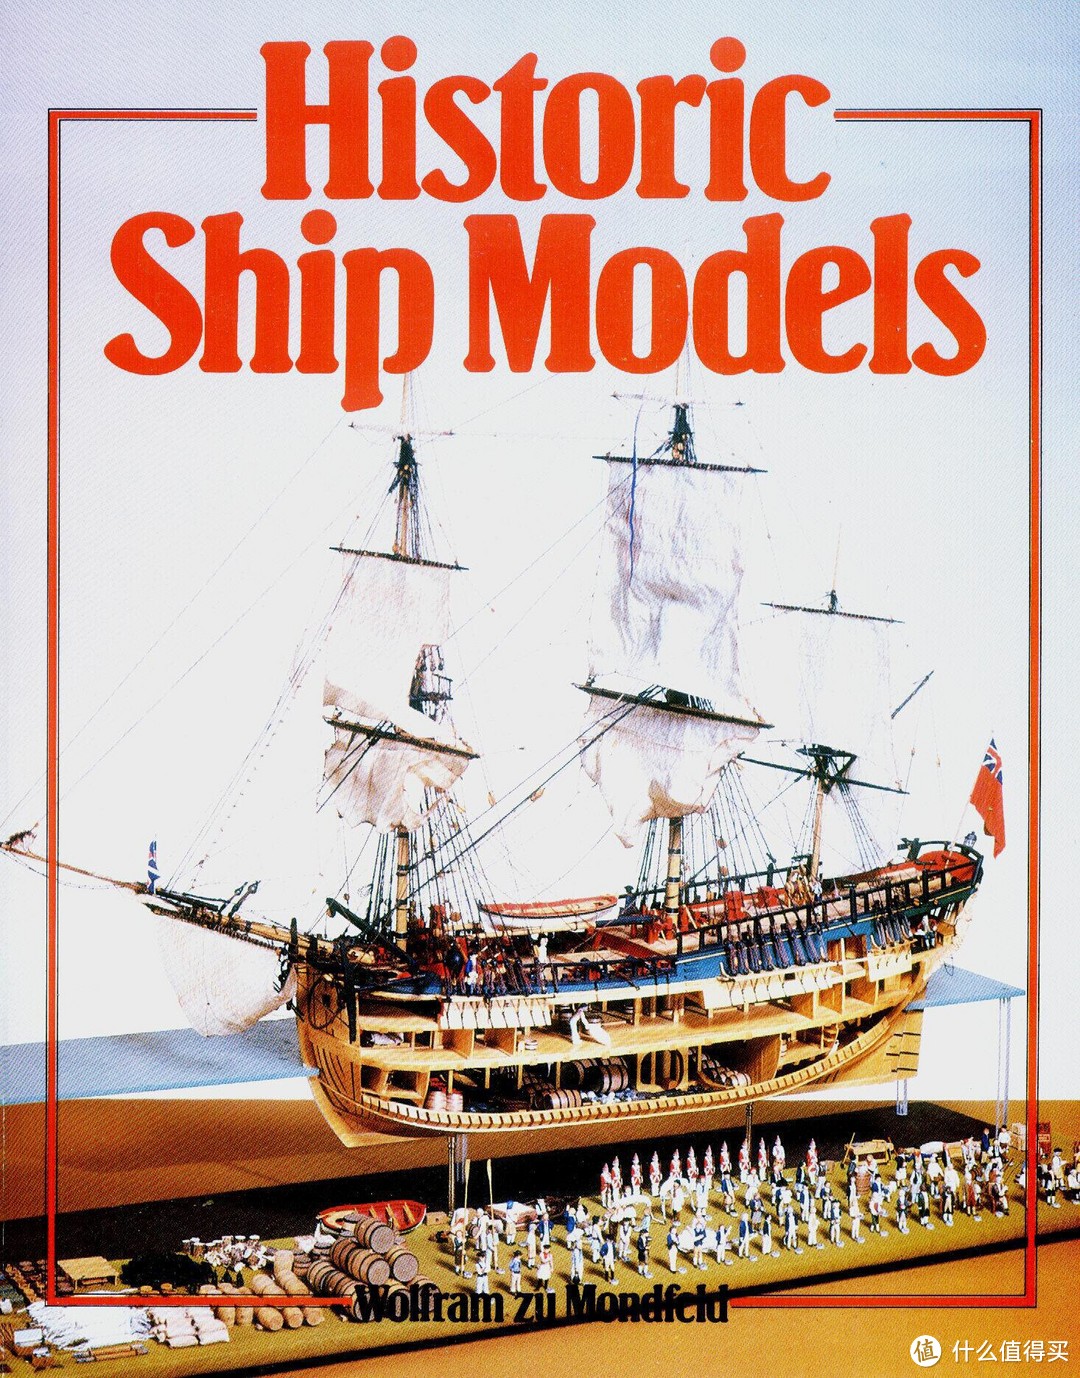 我的征途是大海和大海：古帆船模型 跳坑指南